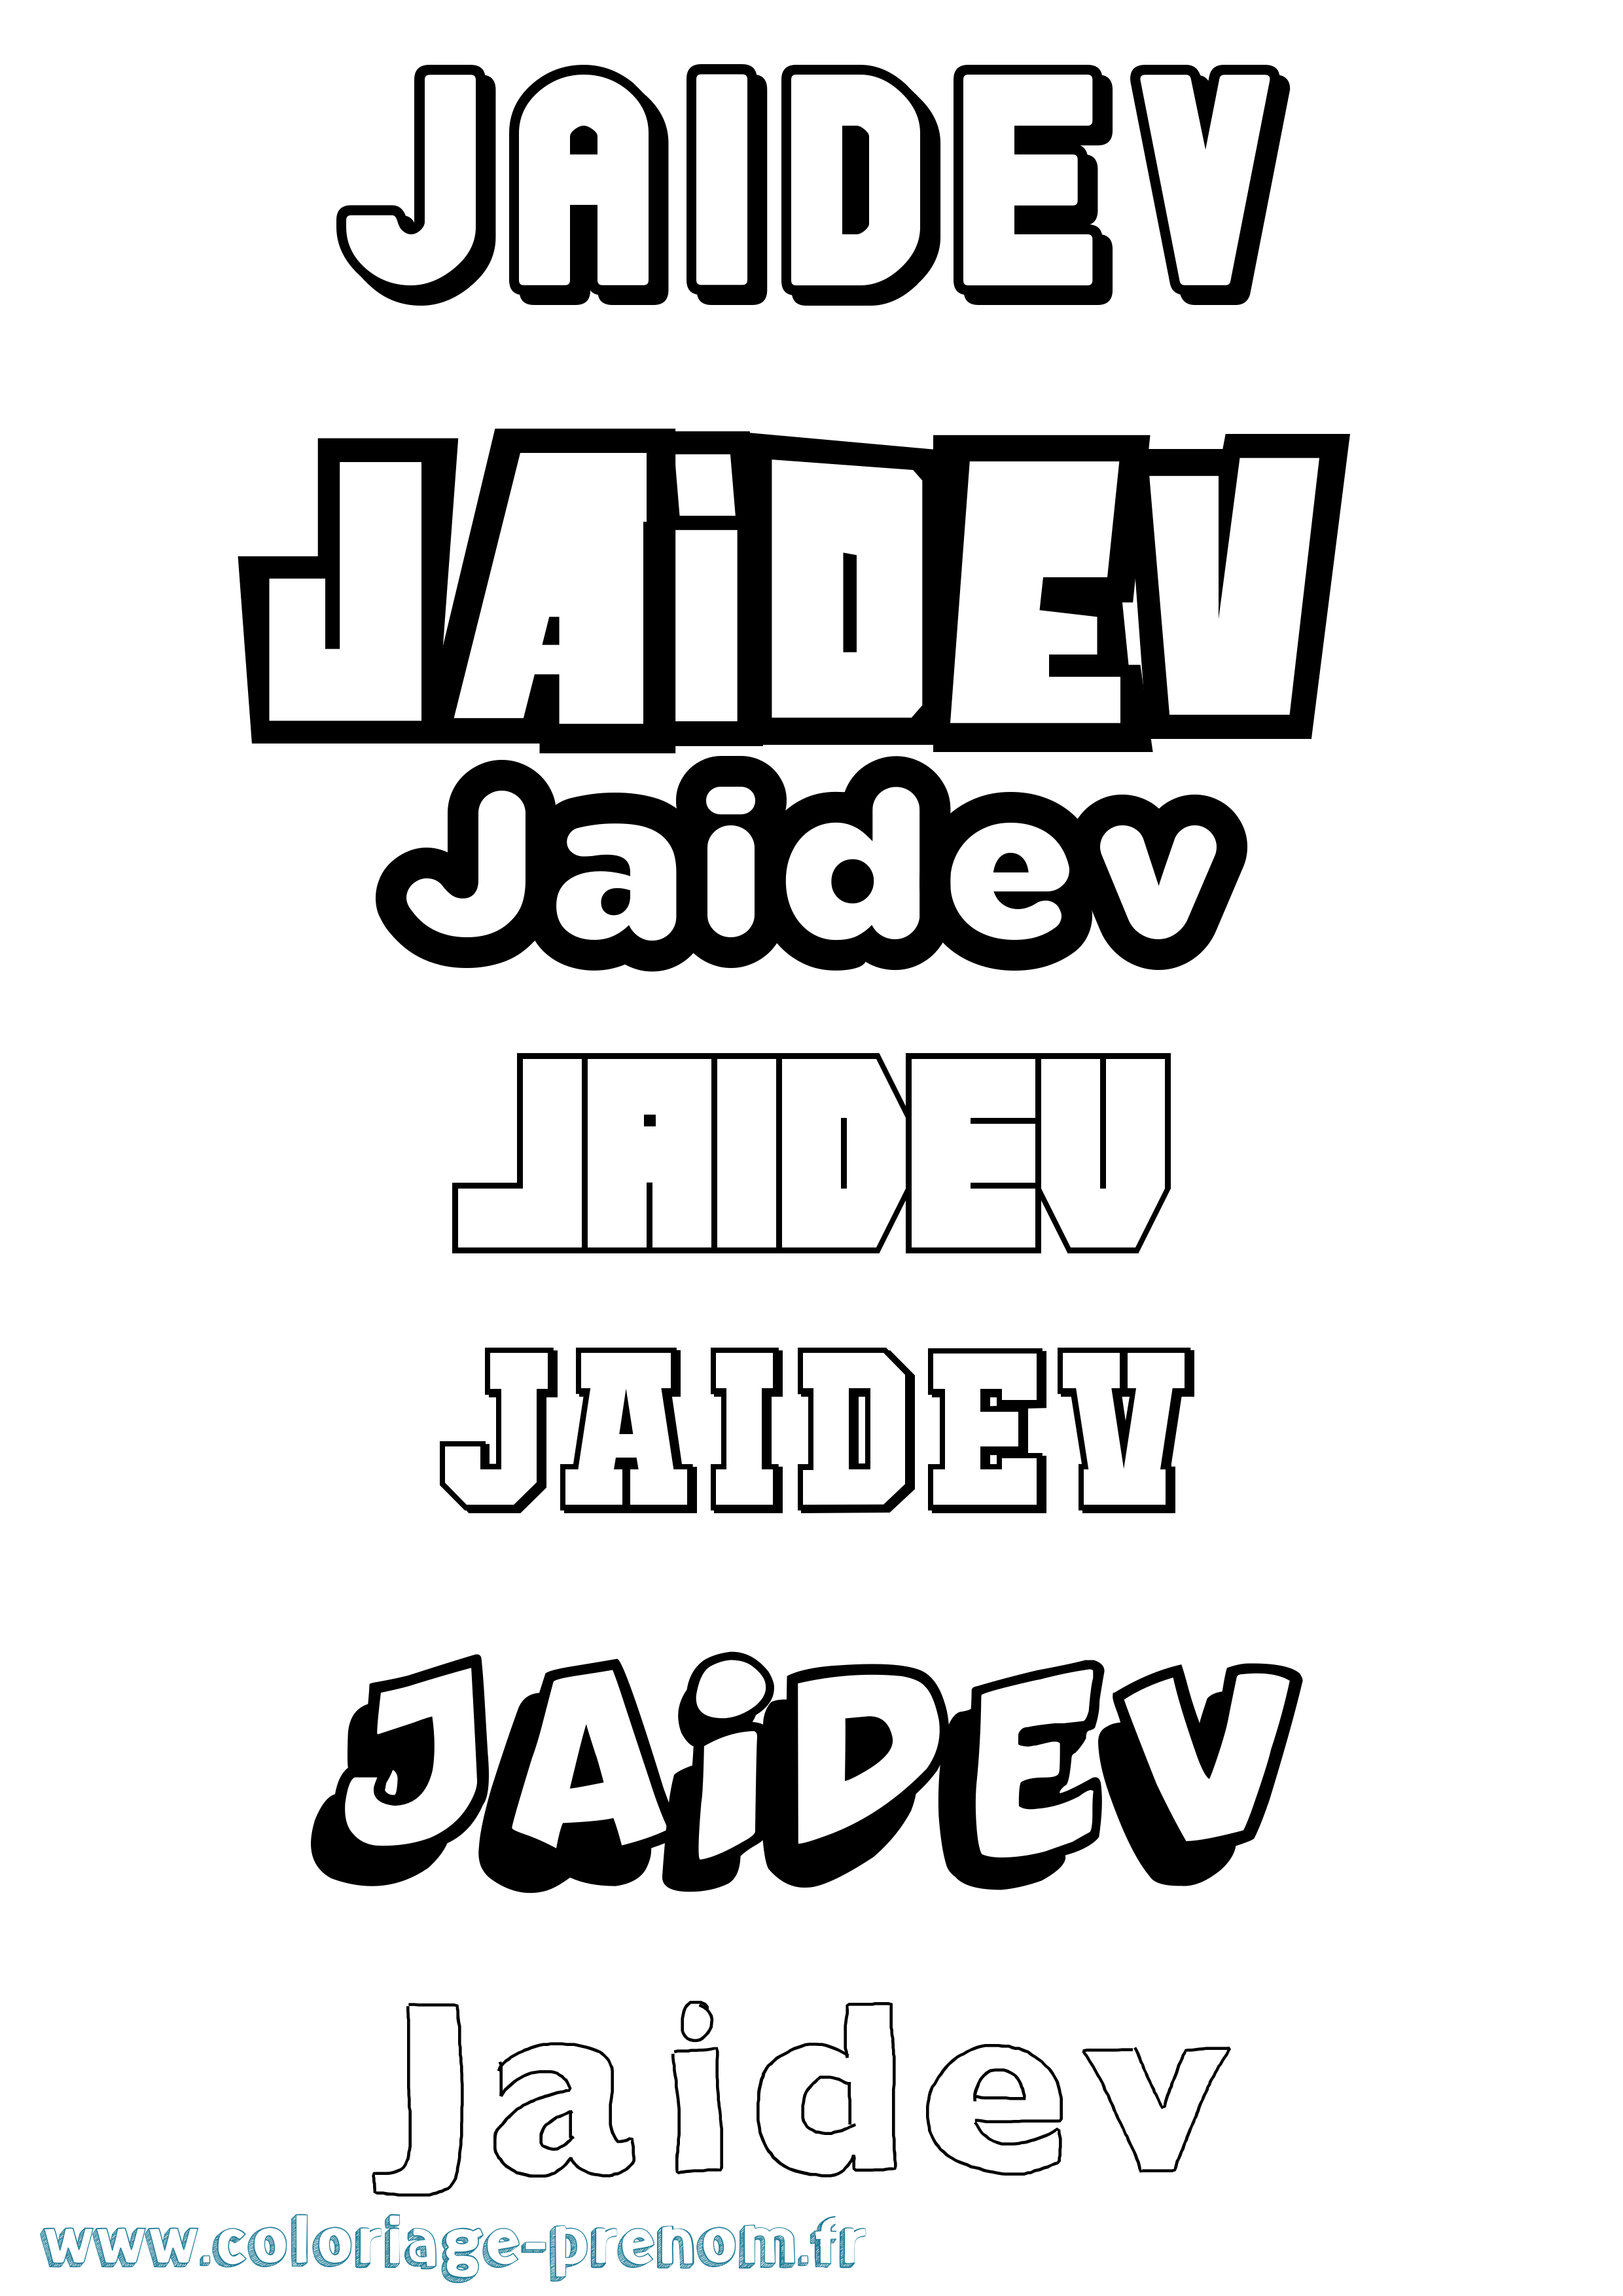 Coloriage prénom Jaidev Simple